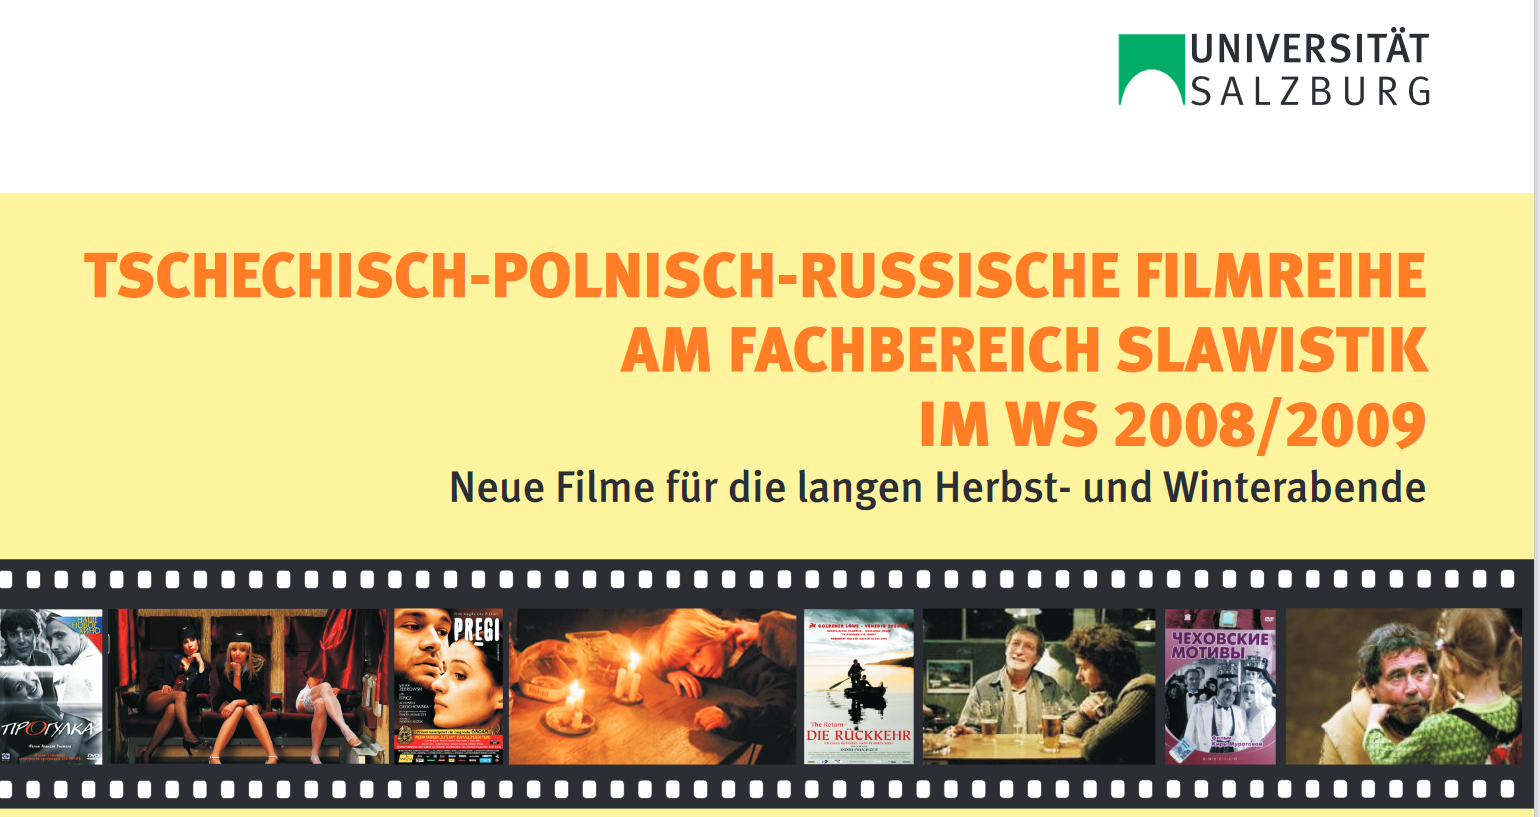 Filmplakat zur polnisch tschechisch russischen Filmreihe WiSe 2008_2009